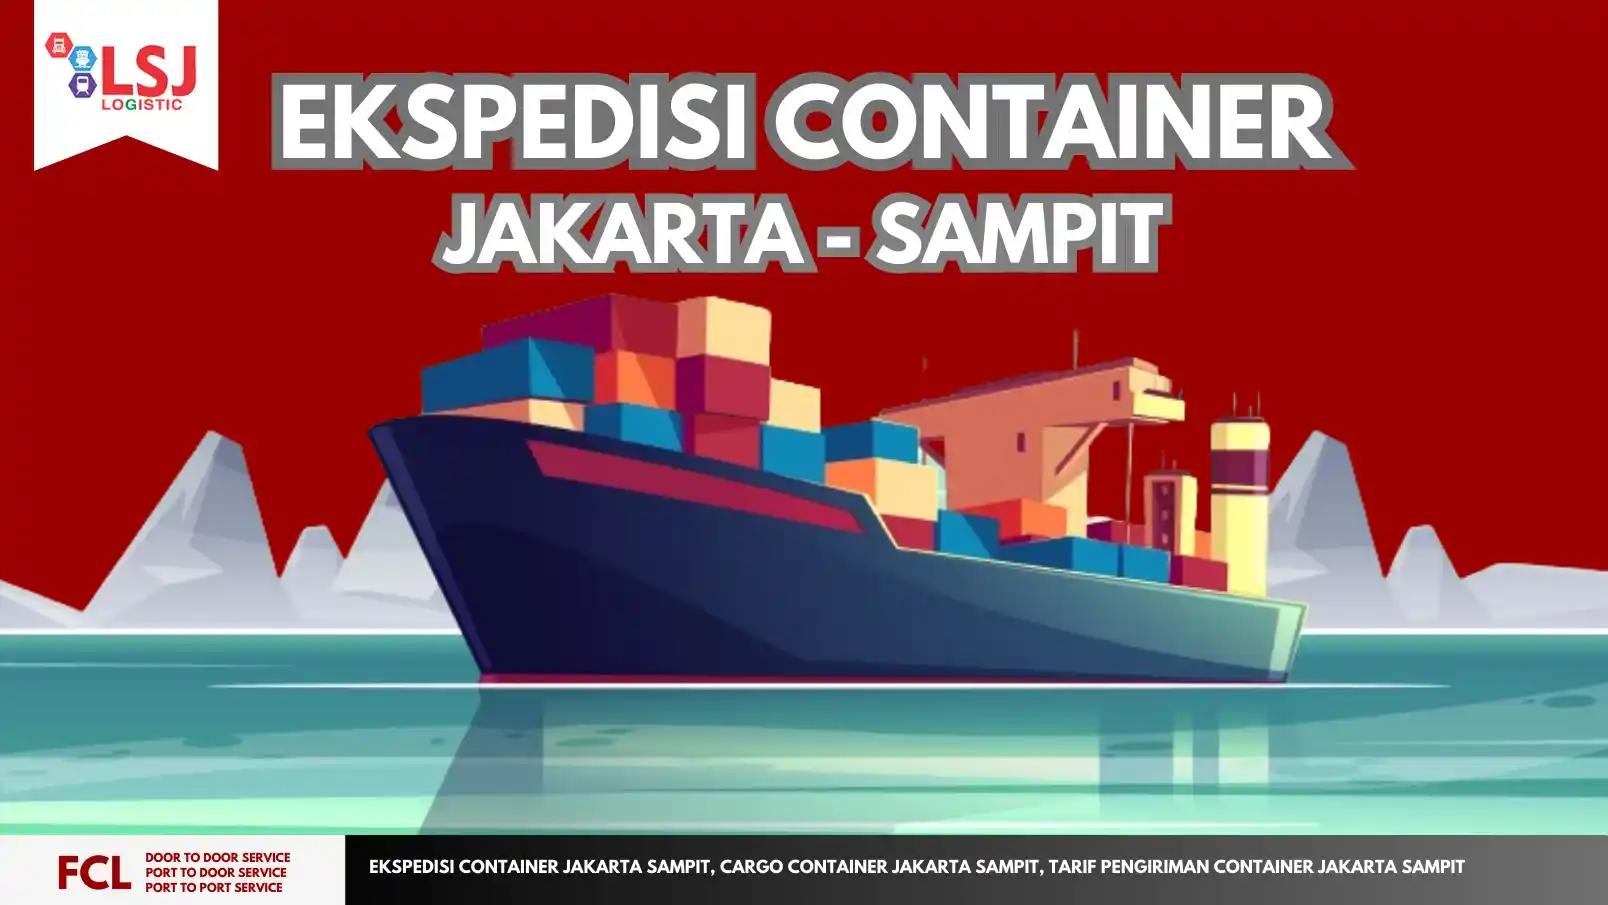 Ekspedisi Container Jakarta Sampit